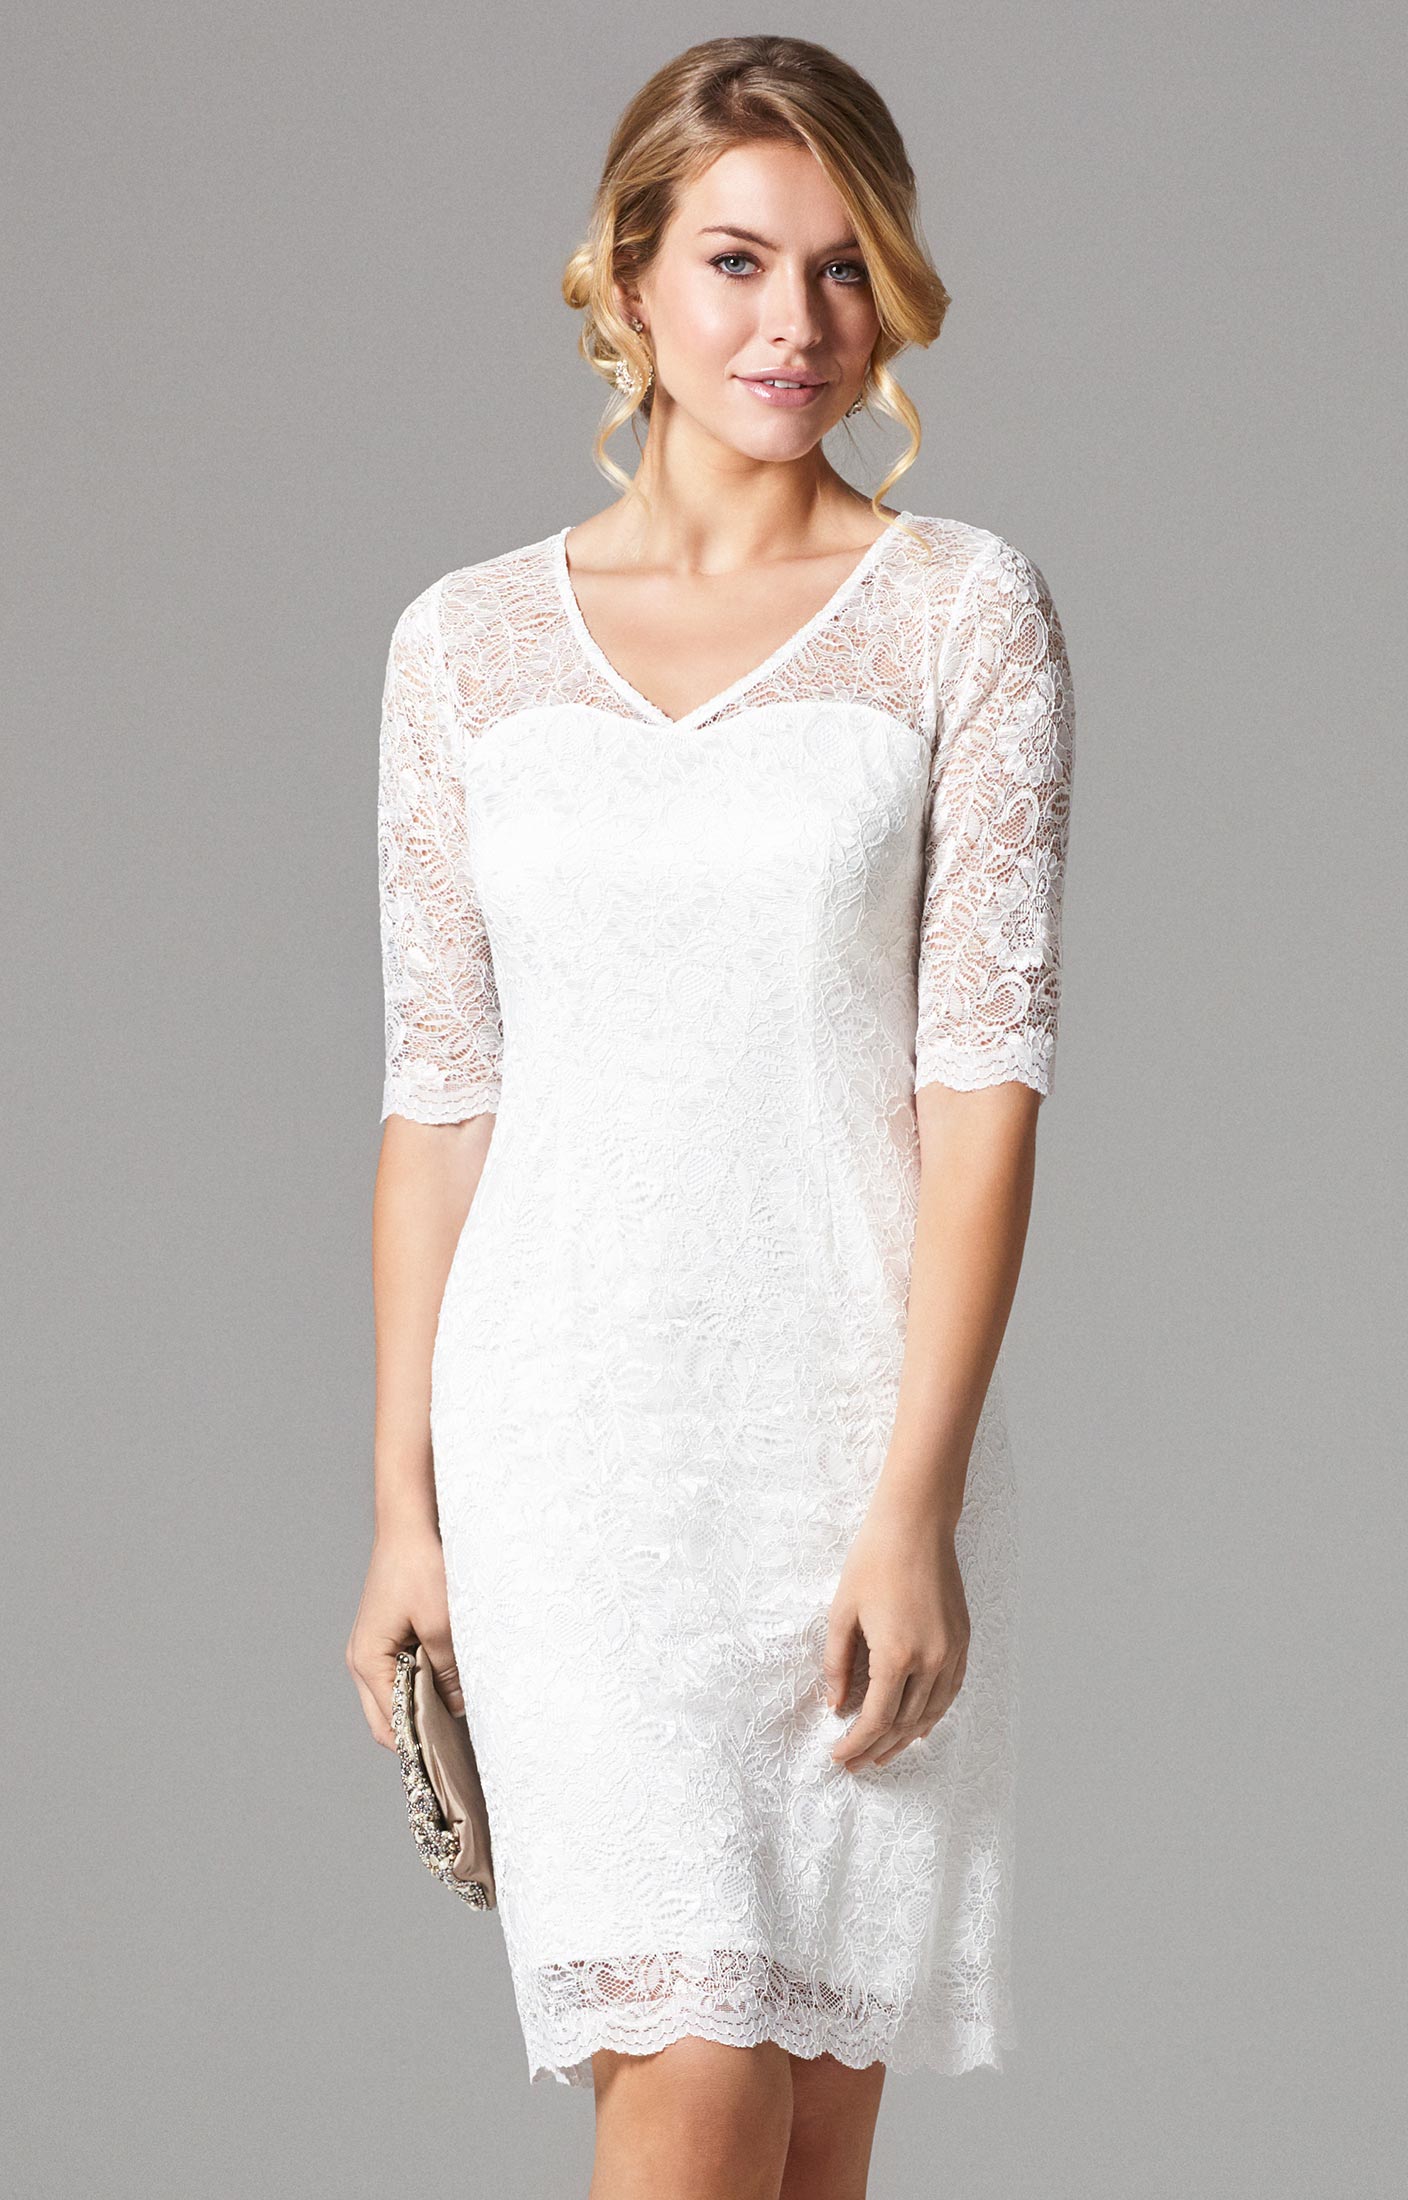 Evelina Wedding Dress Short Ivory - Wedding Dresses, Evening Wear and ...